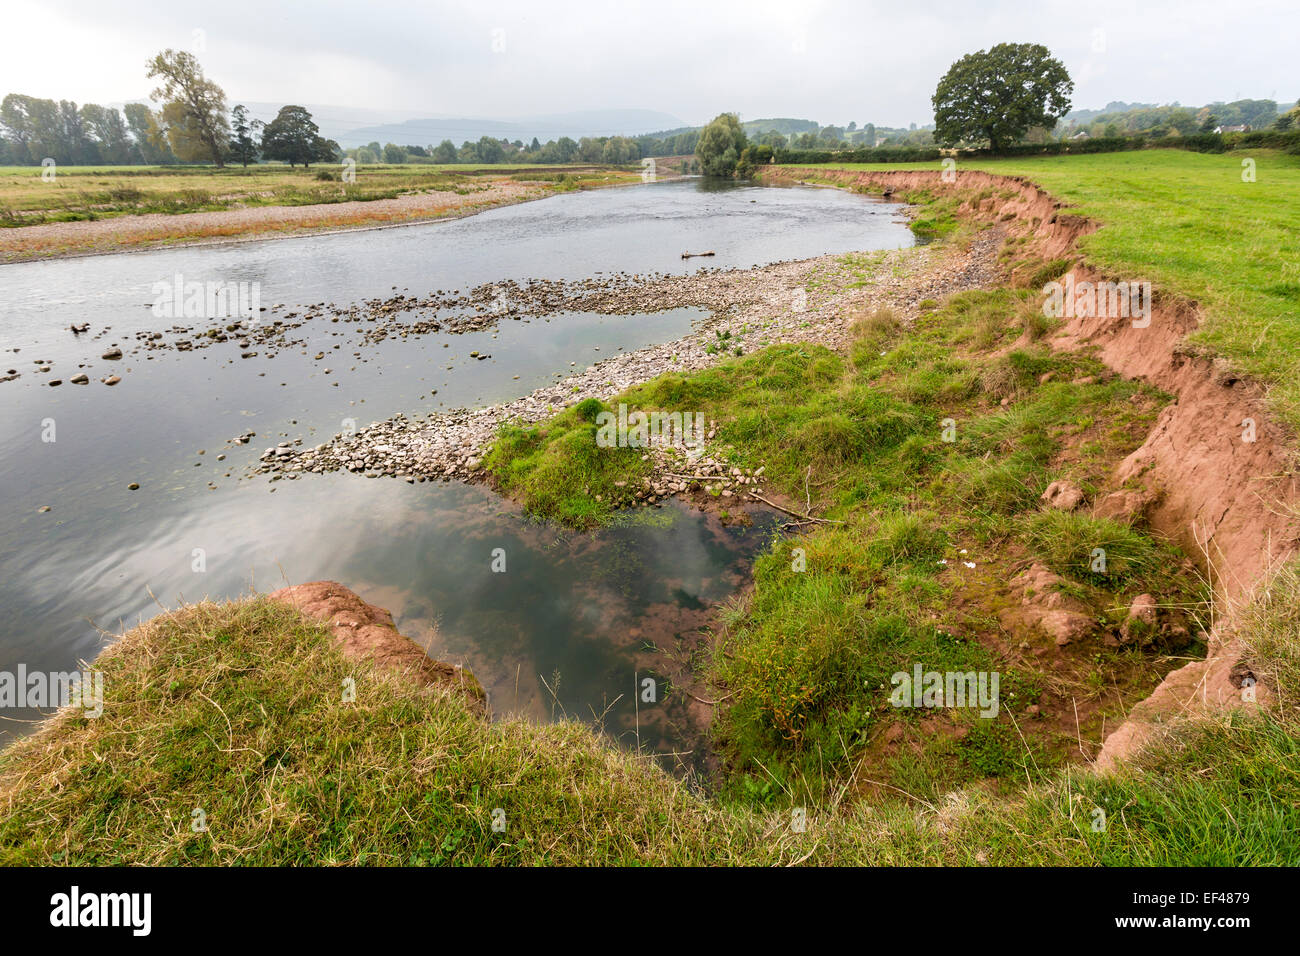 Banca di fiume erosione, il fiume Usk, Wales, Regno Unito Foto Stock